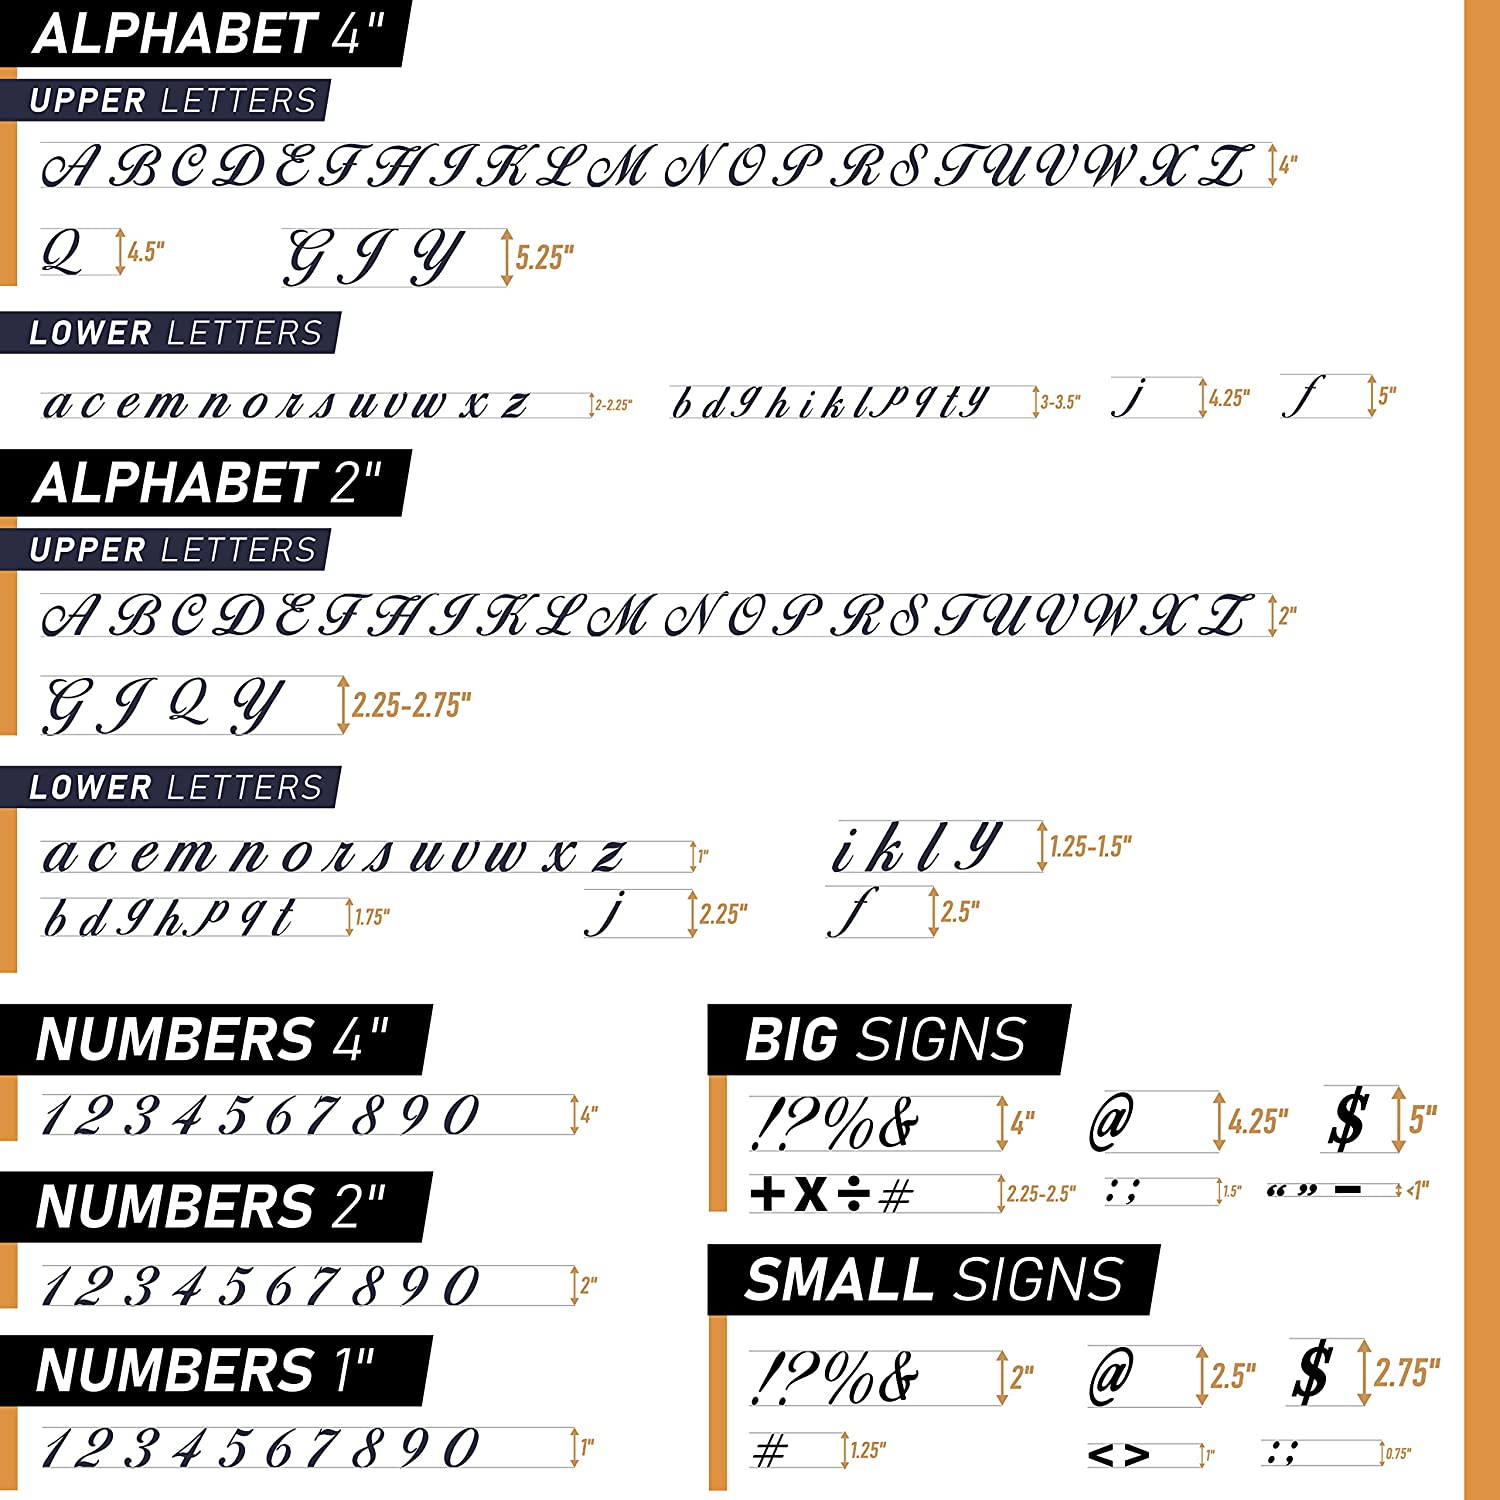 Plantillas de letras del alfabeto de 4 pulgadas para pintar, paquete de 42  plantillas de letras y números con letreros para pintar sobre madera